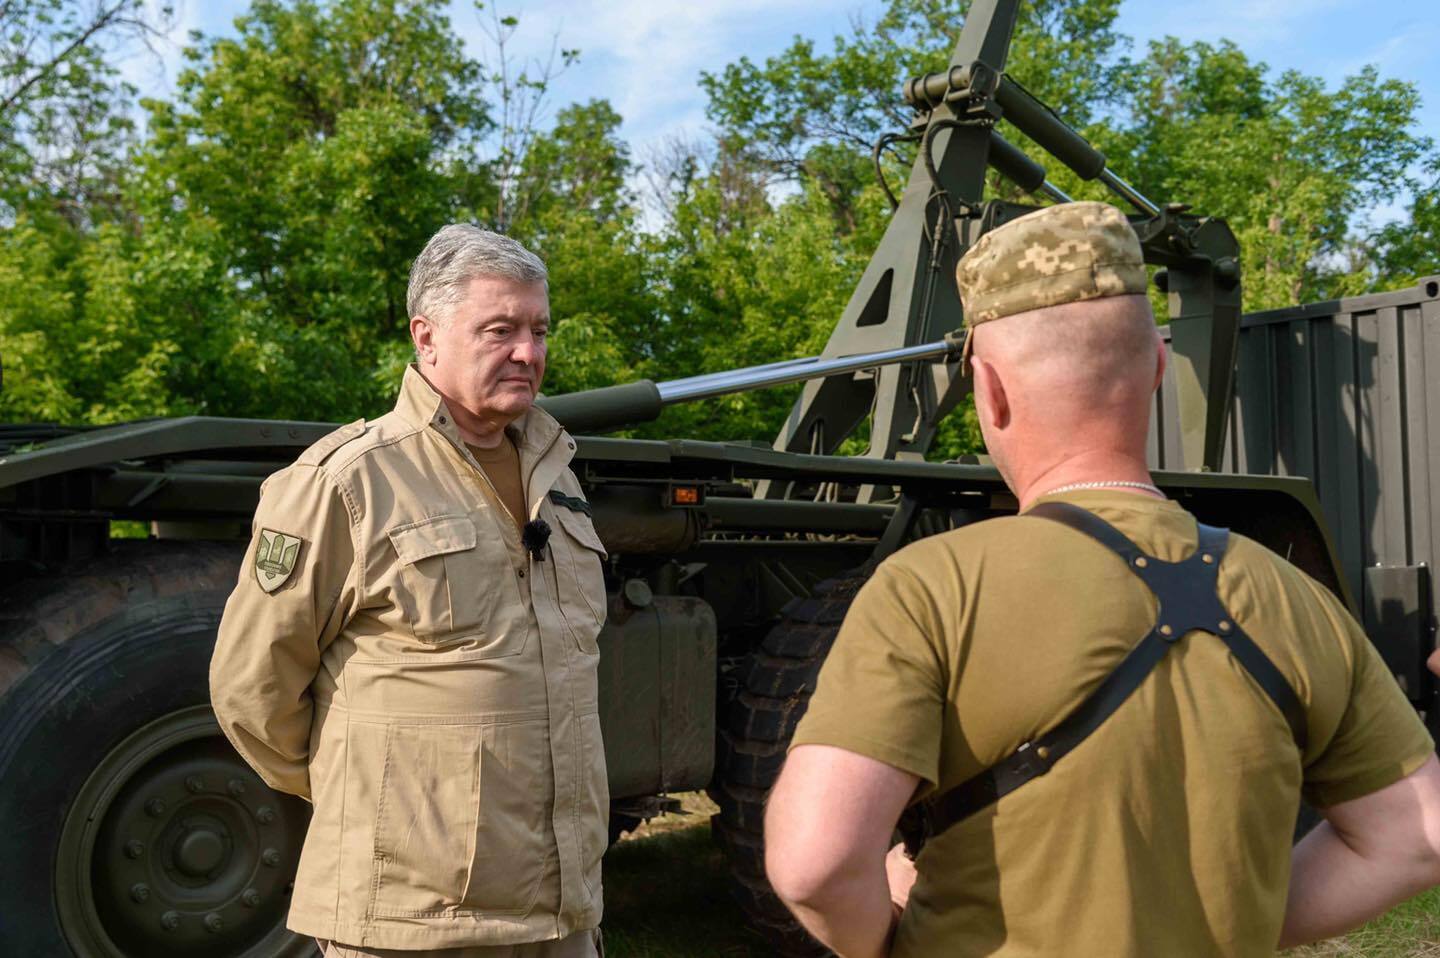 Десантники в Донецкой области получили тягач Foden и мобильный шиномонтаж от Порошенко